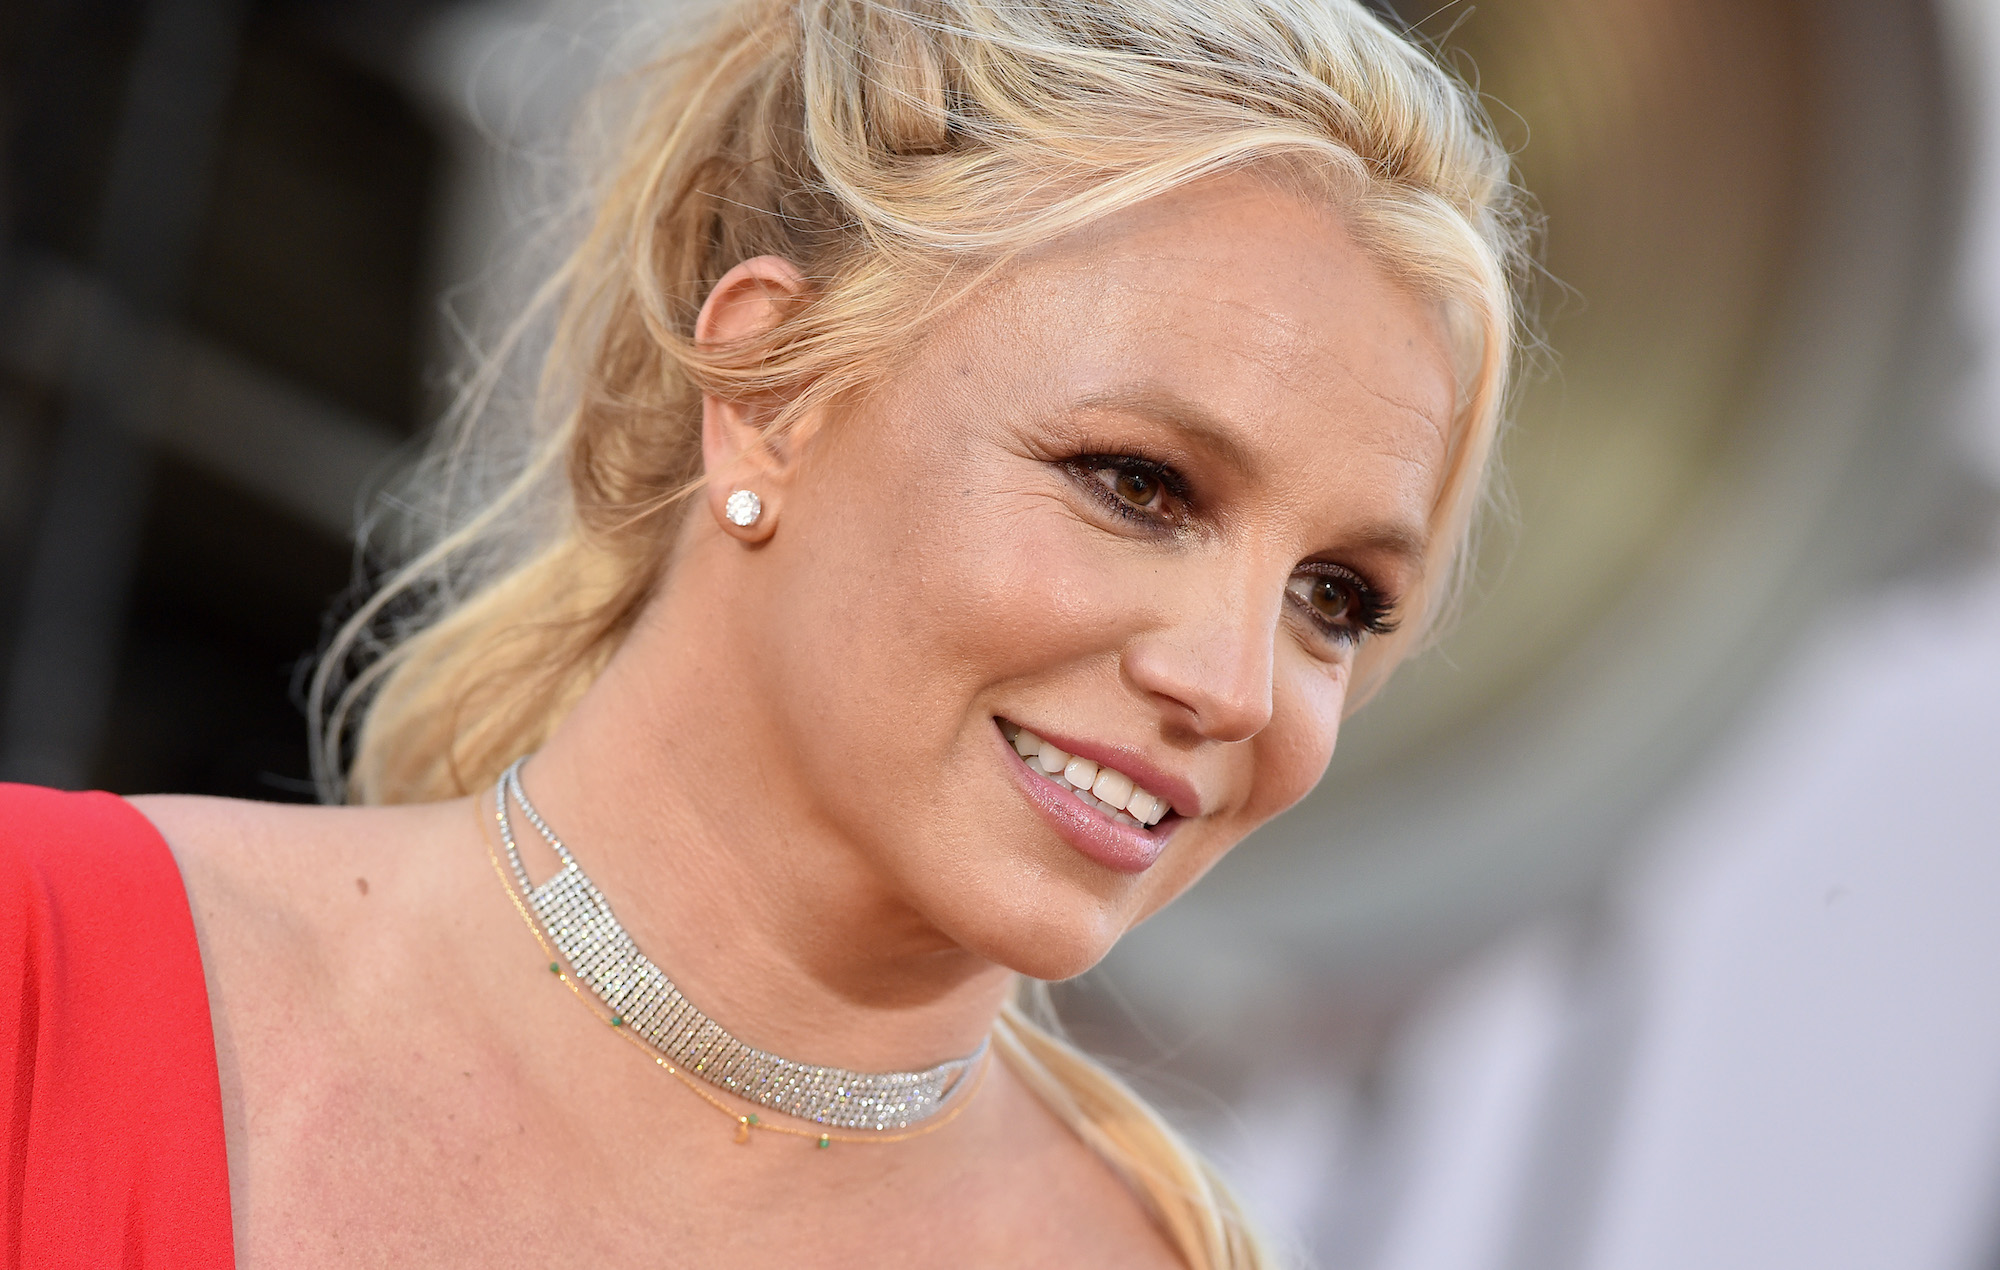 La madre de Britney Spears dice que se debe permitir a la cantante elegir su propio abogado